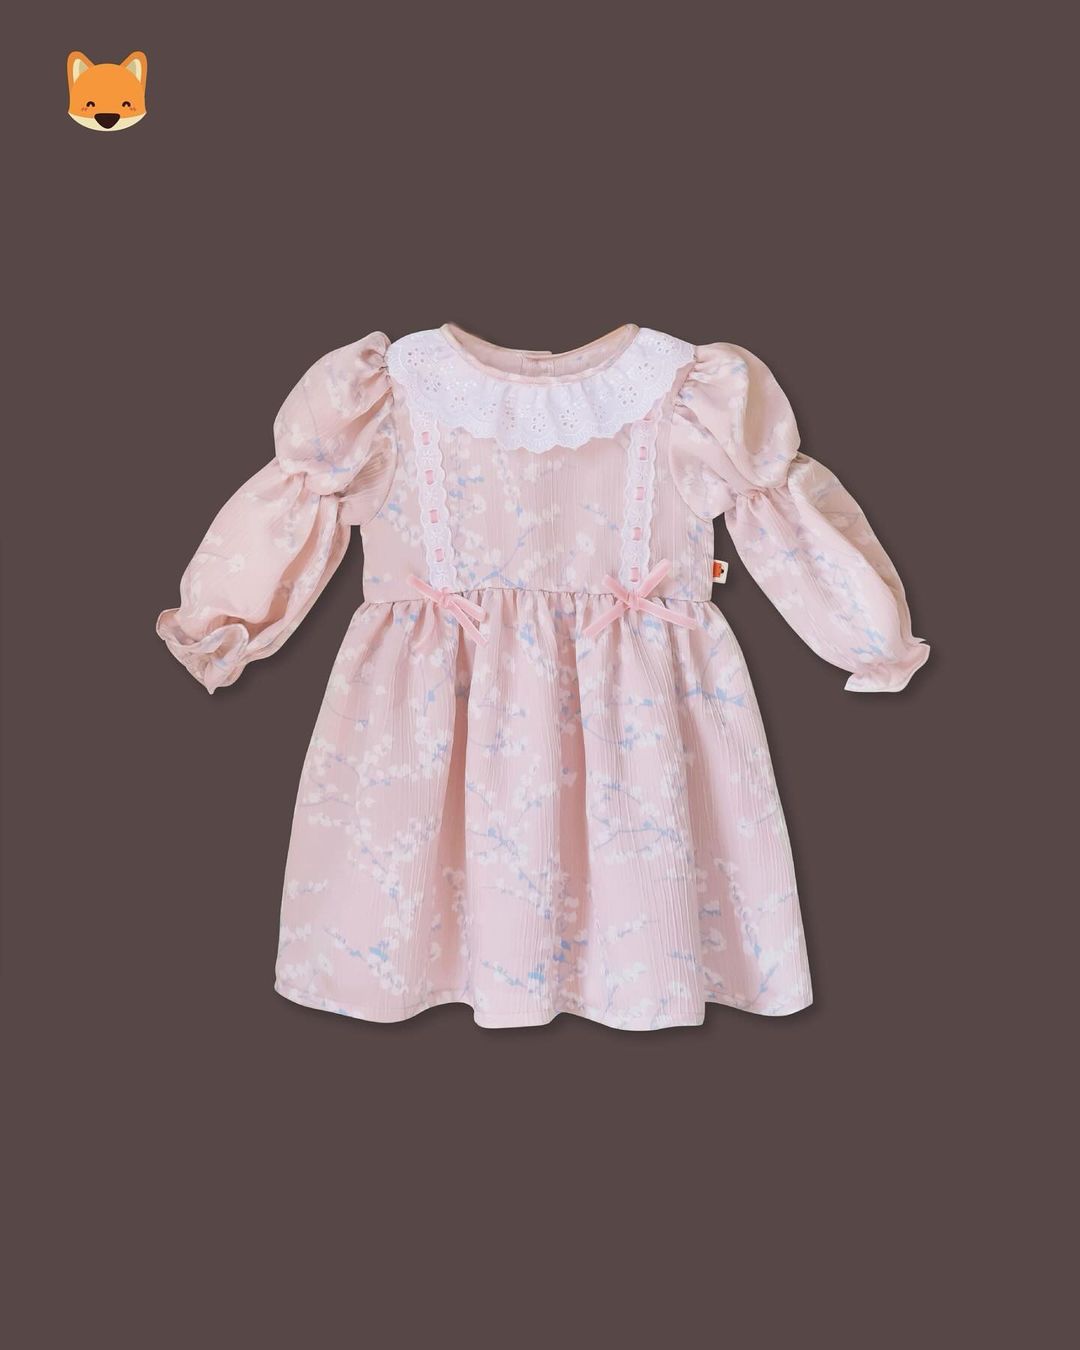 Rekomendasi Brand Baju Lebaran Bayi Perempuan - Paulette Kids